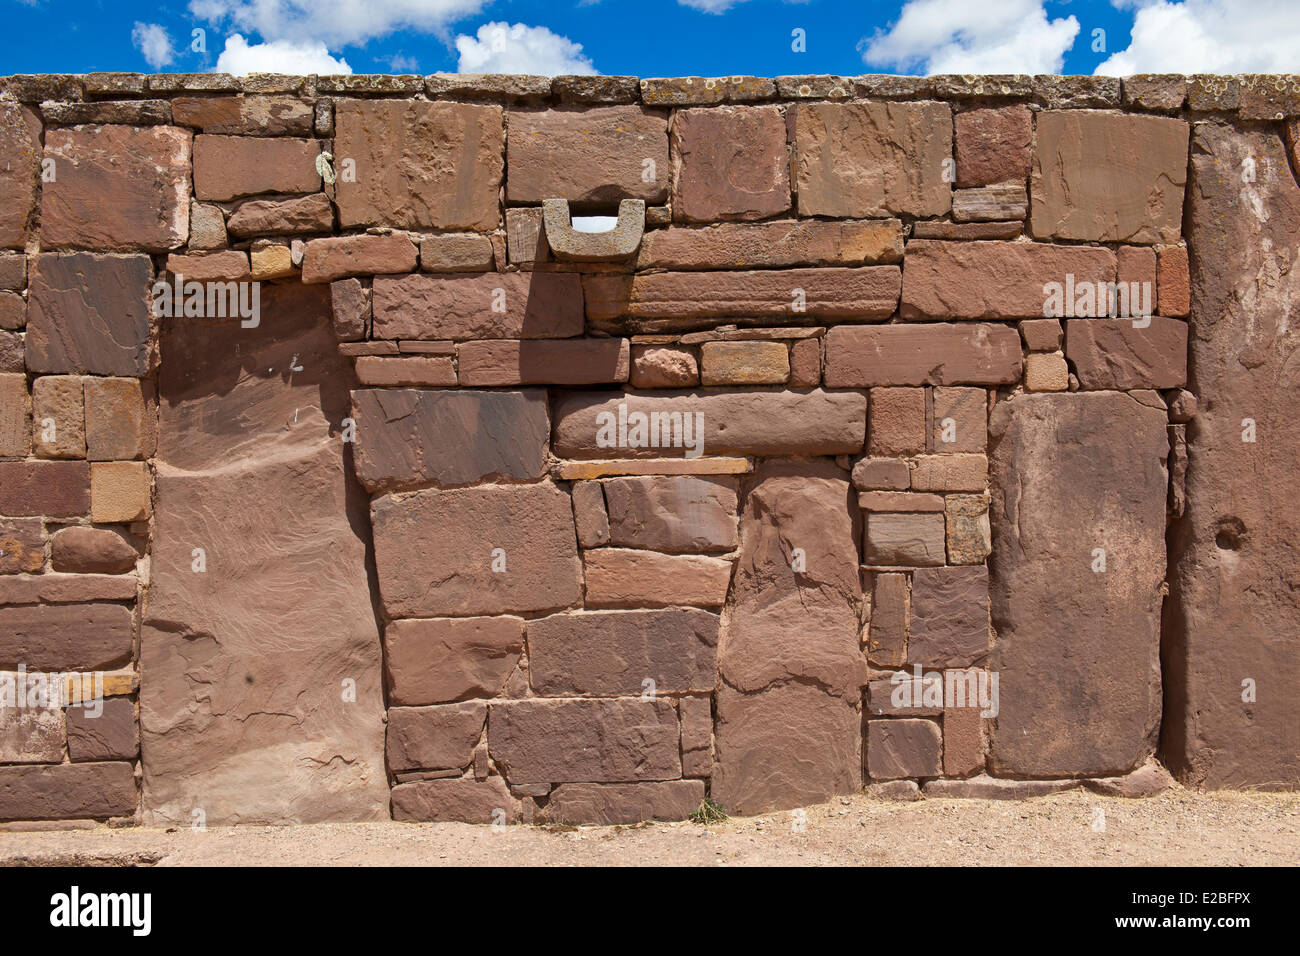 Bolivie La Paz Tiwanaku Ministère Pre-Inca site archéologique de Kalassaya stonewall UNESCO Observatoire astronomique du temple Banque D'Images